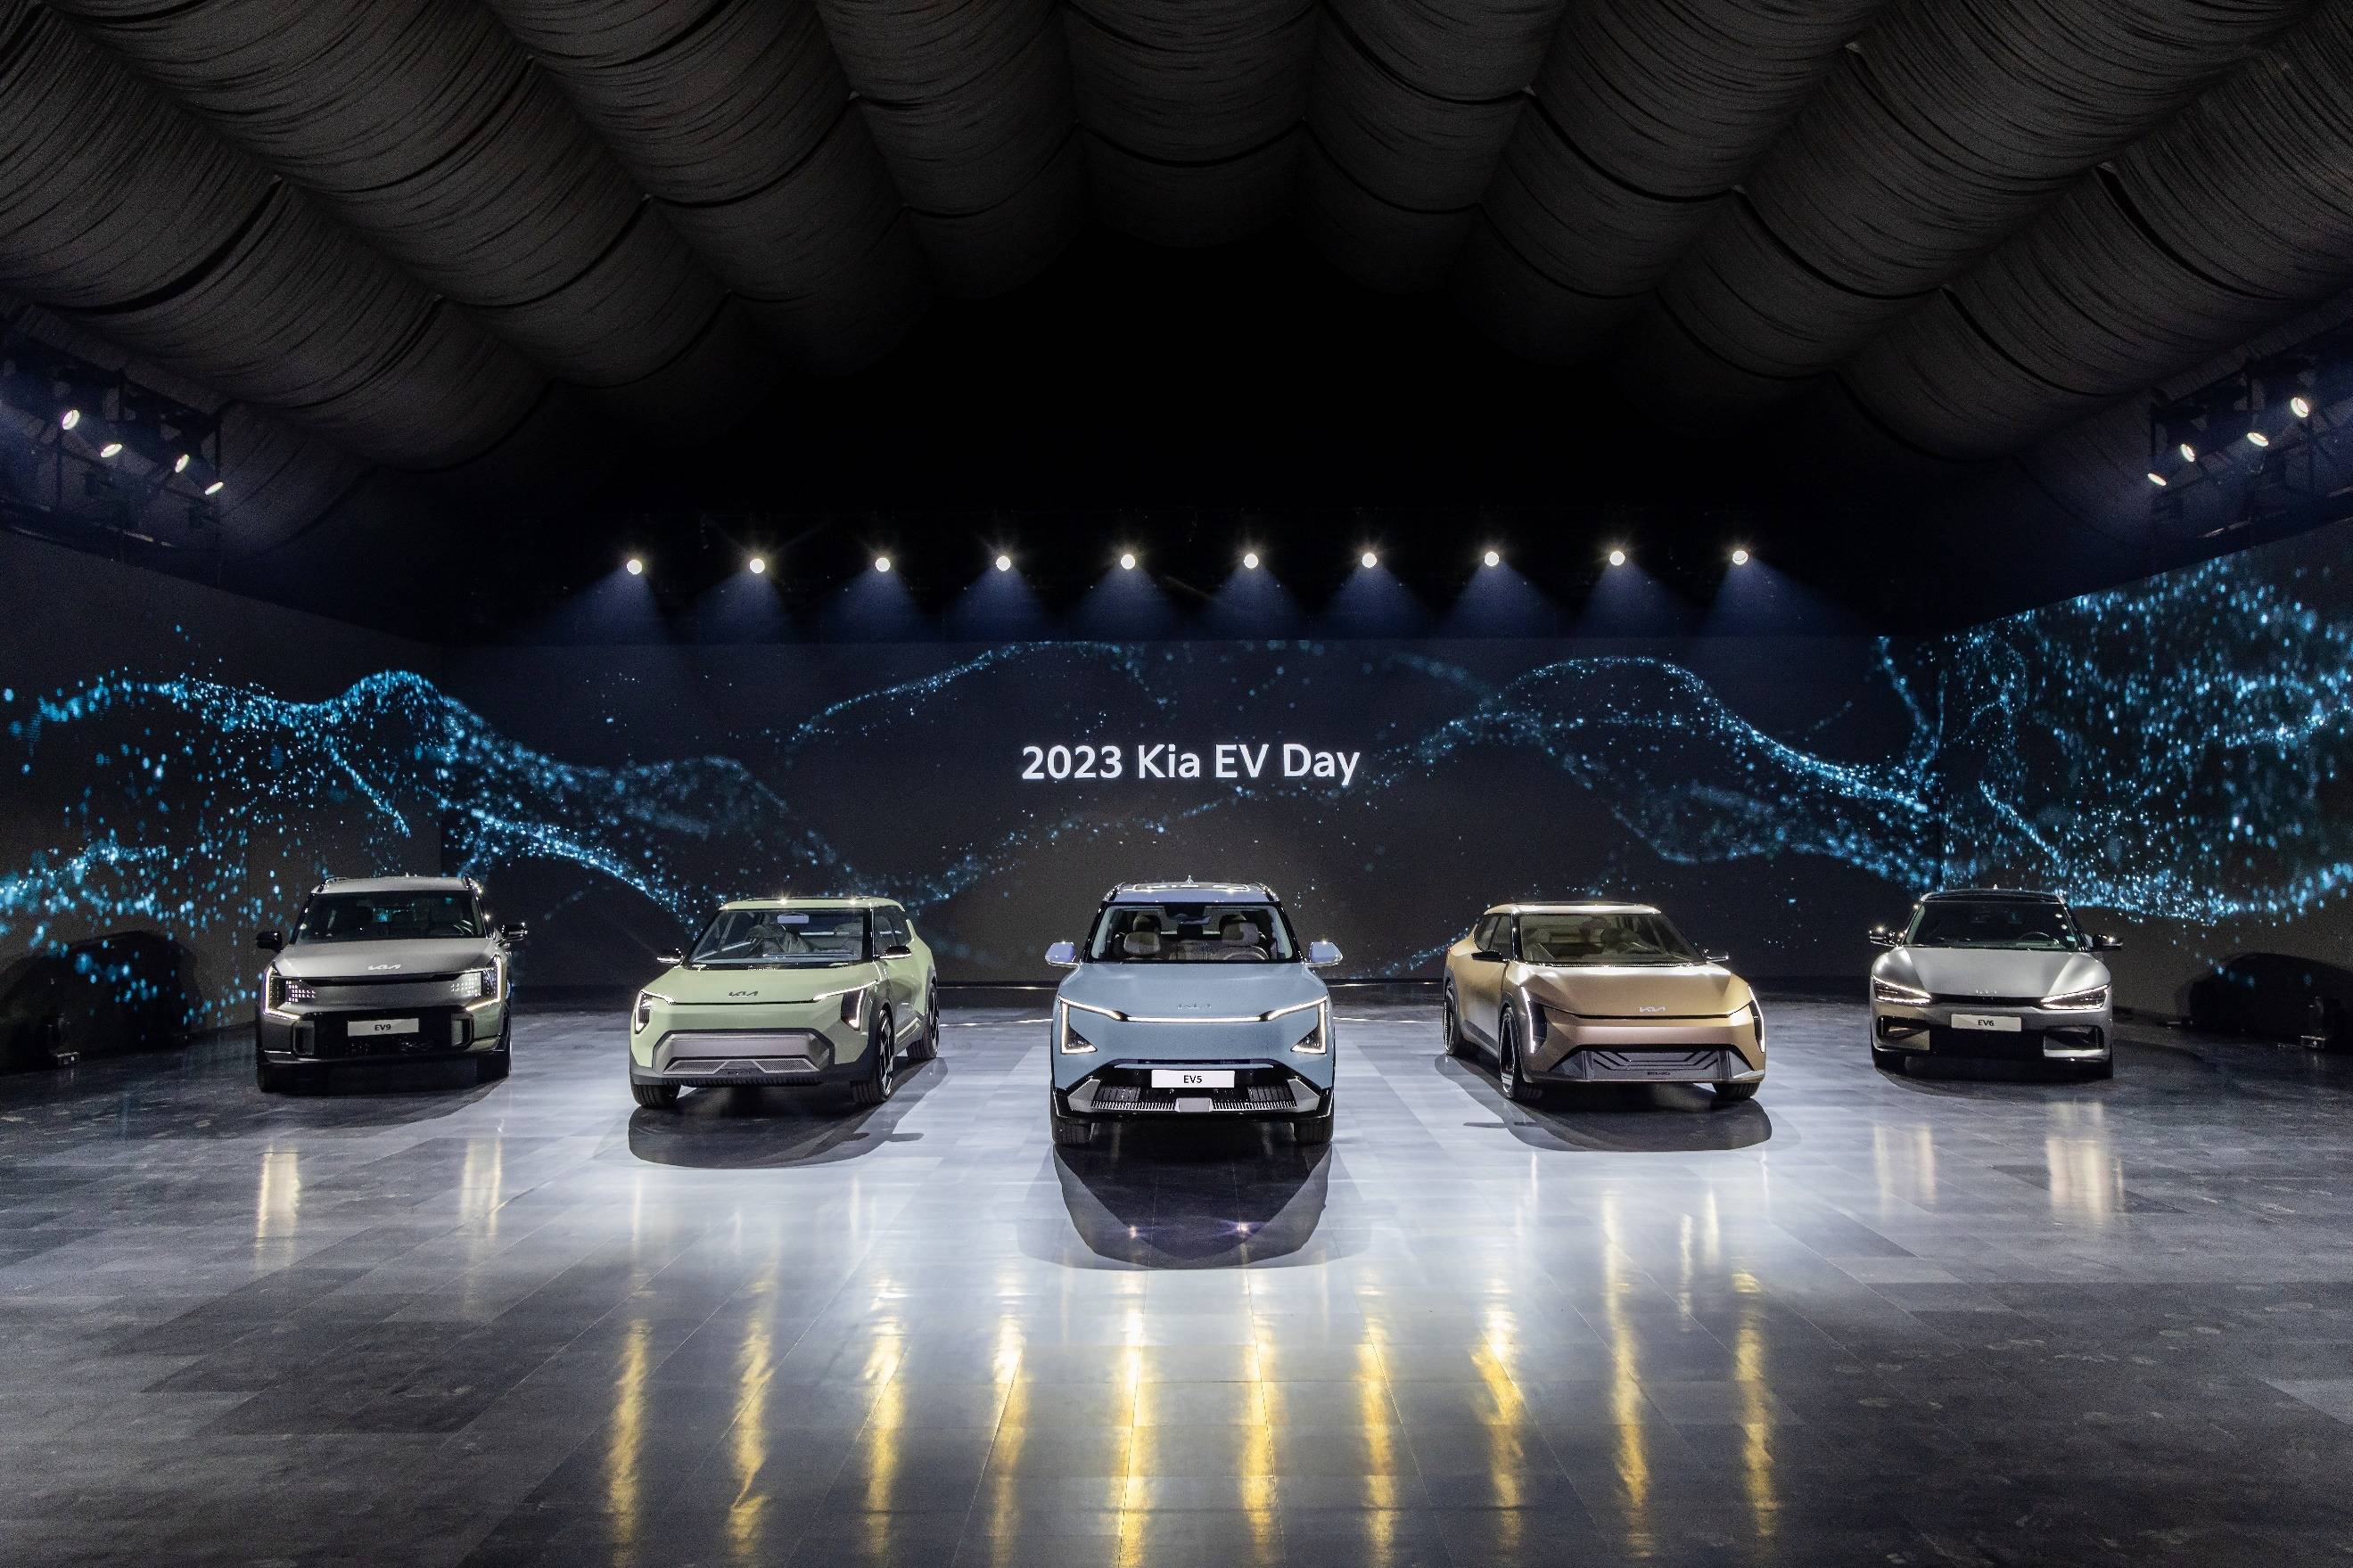 起亚在“Kia EV Day”上发布EV5及两款概念车型